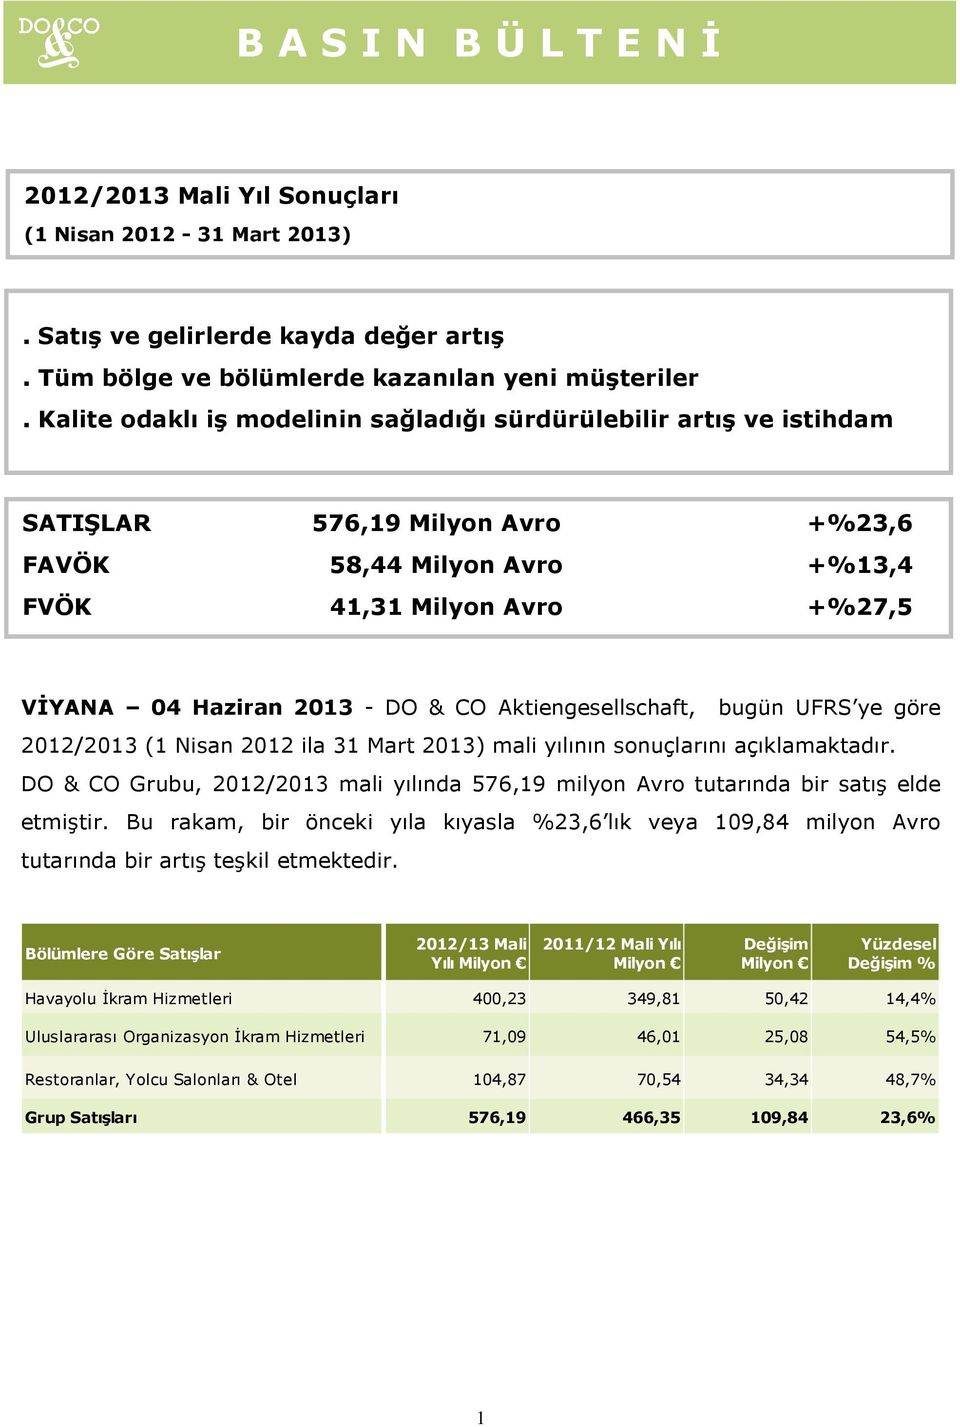 Aktiengesellschaft, bugün UFRS ye göre 2012/2013 (1 Nisan 2012 ila 31 Mart 2013) mali yılının sonuçlarını açıklamaktadır.